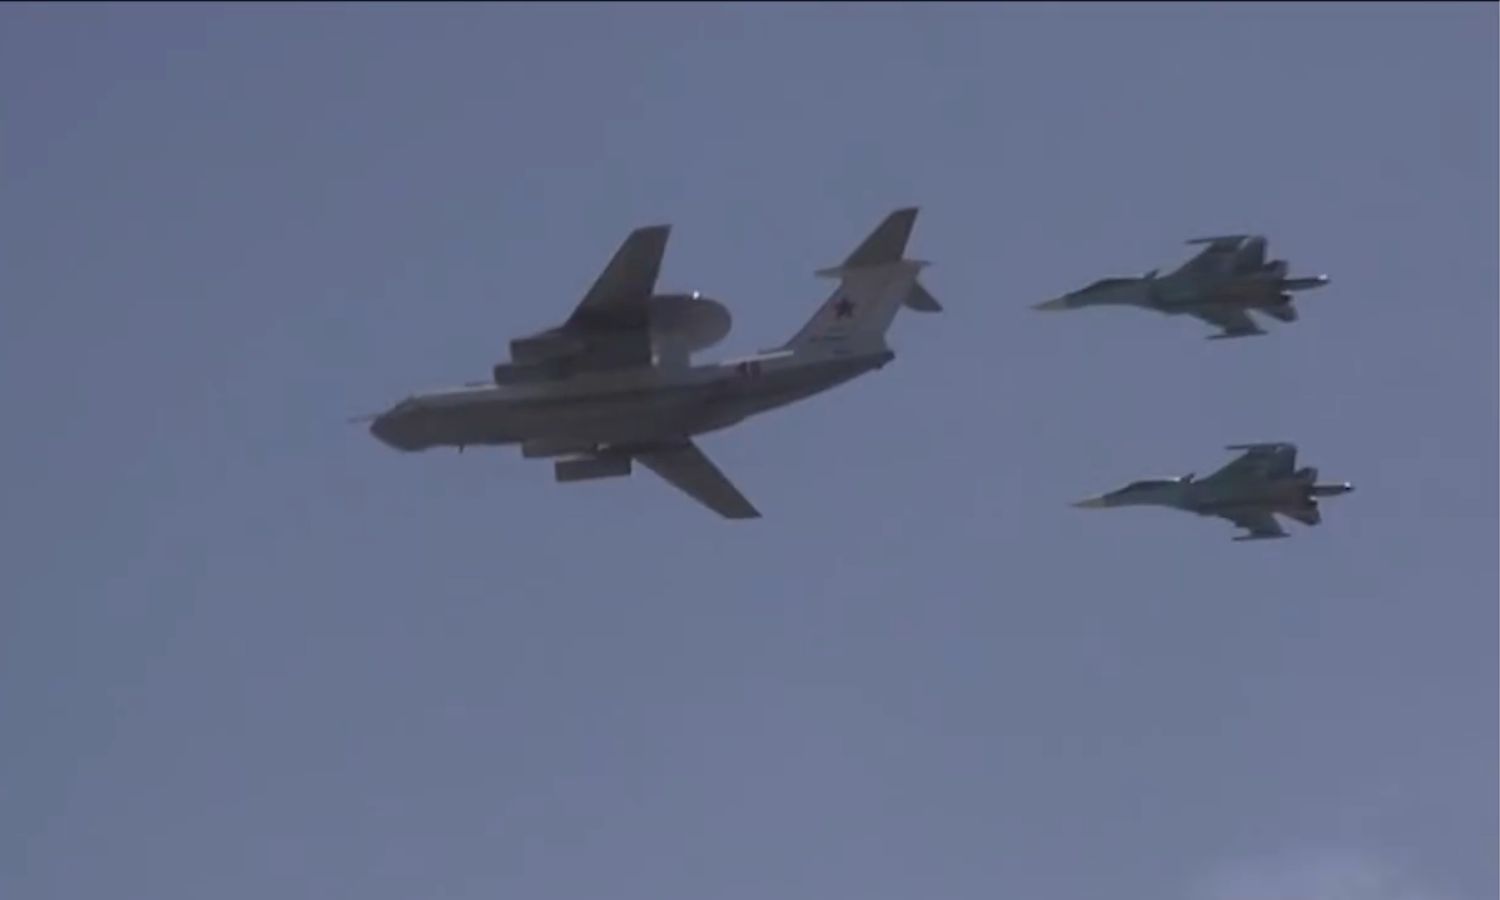 طائرات روسية خلال احتفال في قاعدة "حميميم" العسكرية في اللاذقية - 24 من حزيران 2020 (وزارة الدفاع السورية)